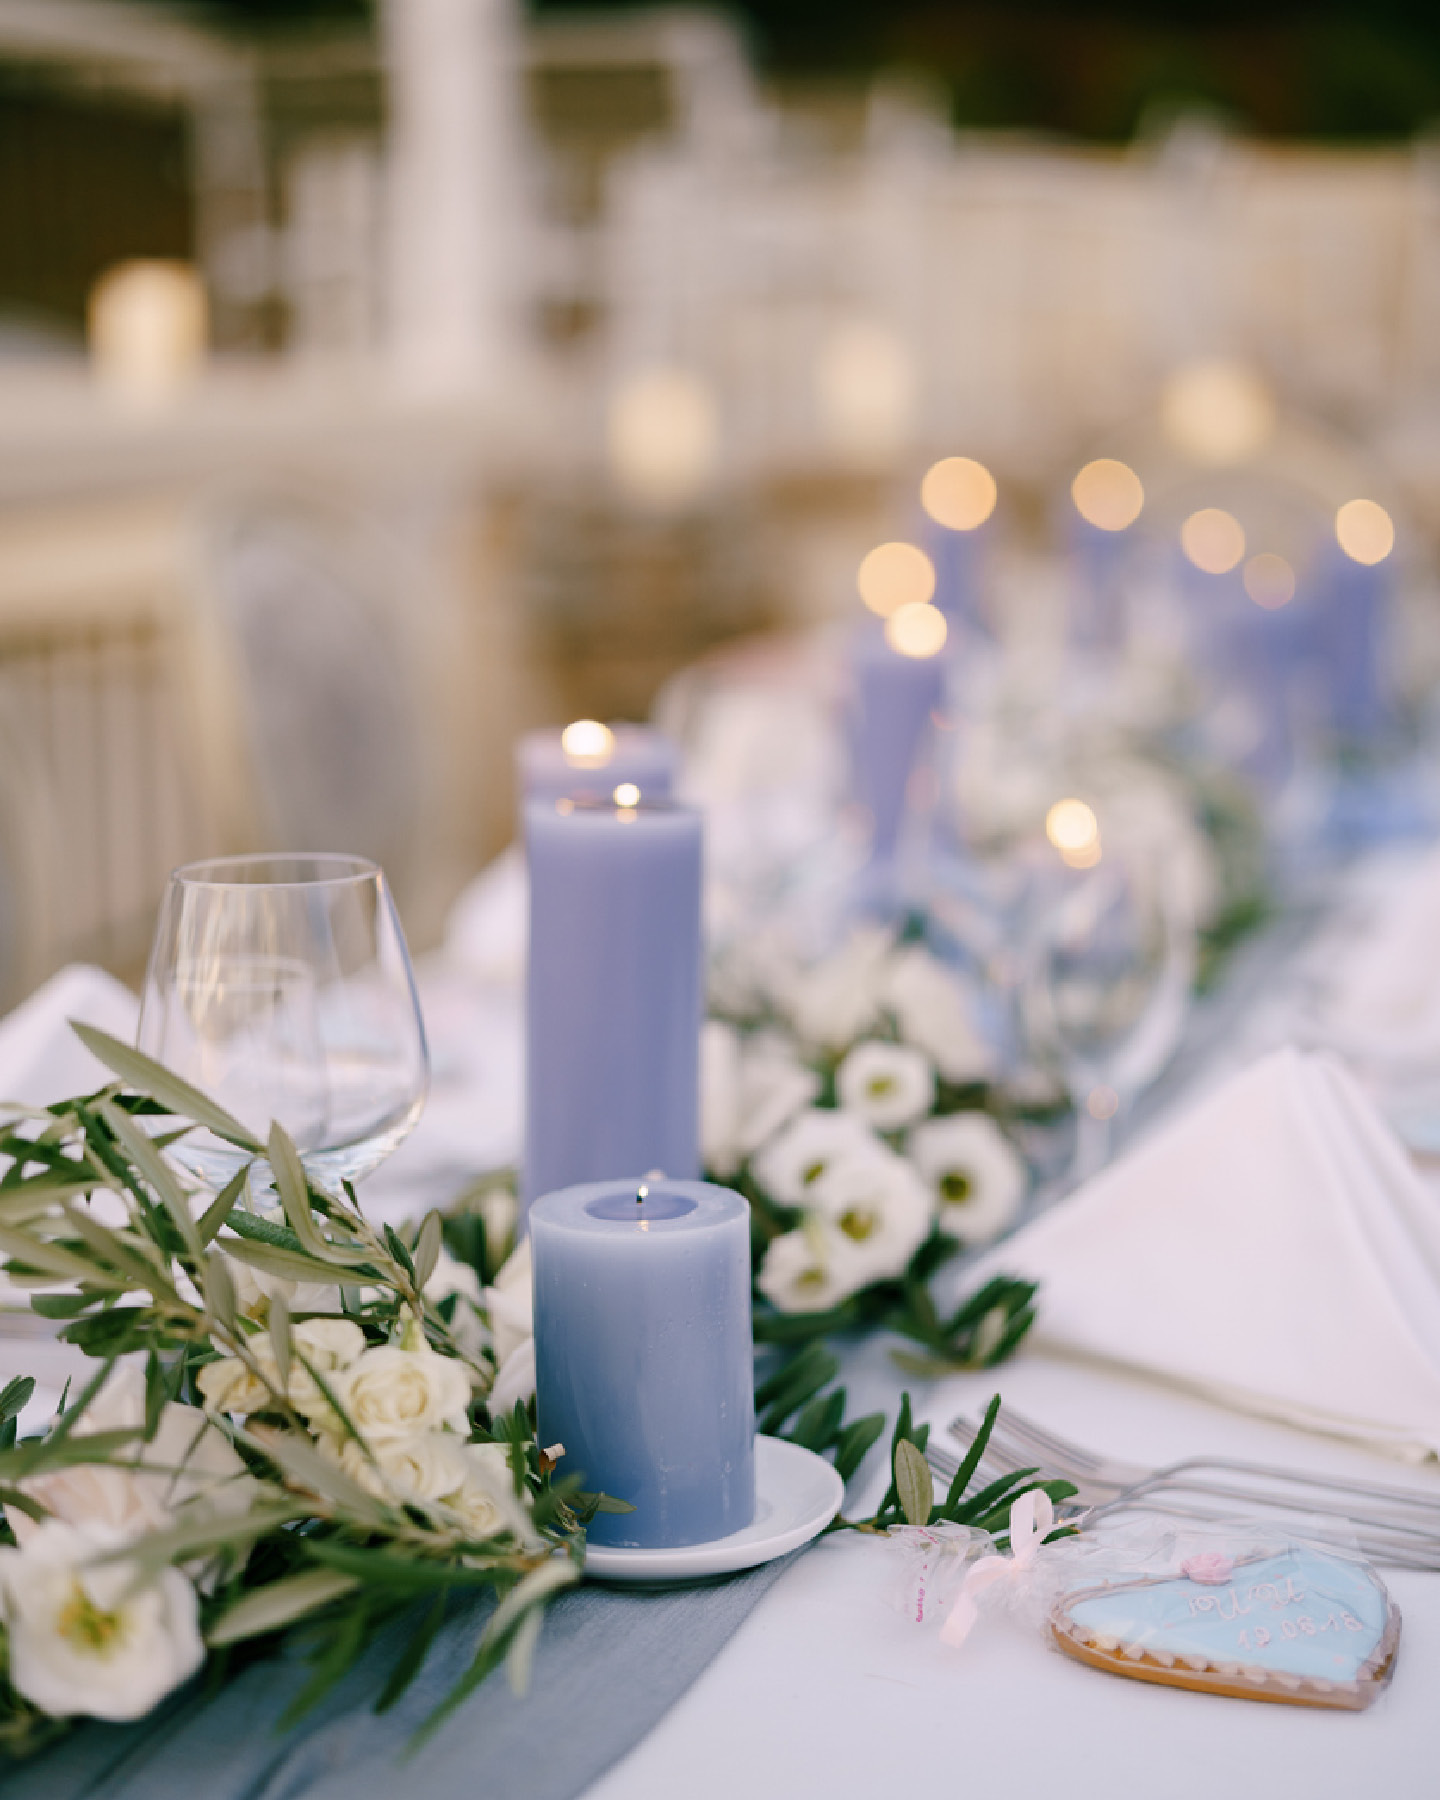 Schön gedeckte Festtafel zur Taufe im Greeery-Stil, mit weißen Blüten und fliederfarbenen Kerzen